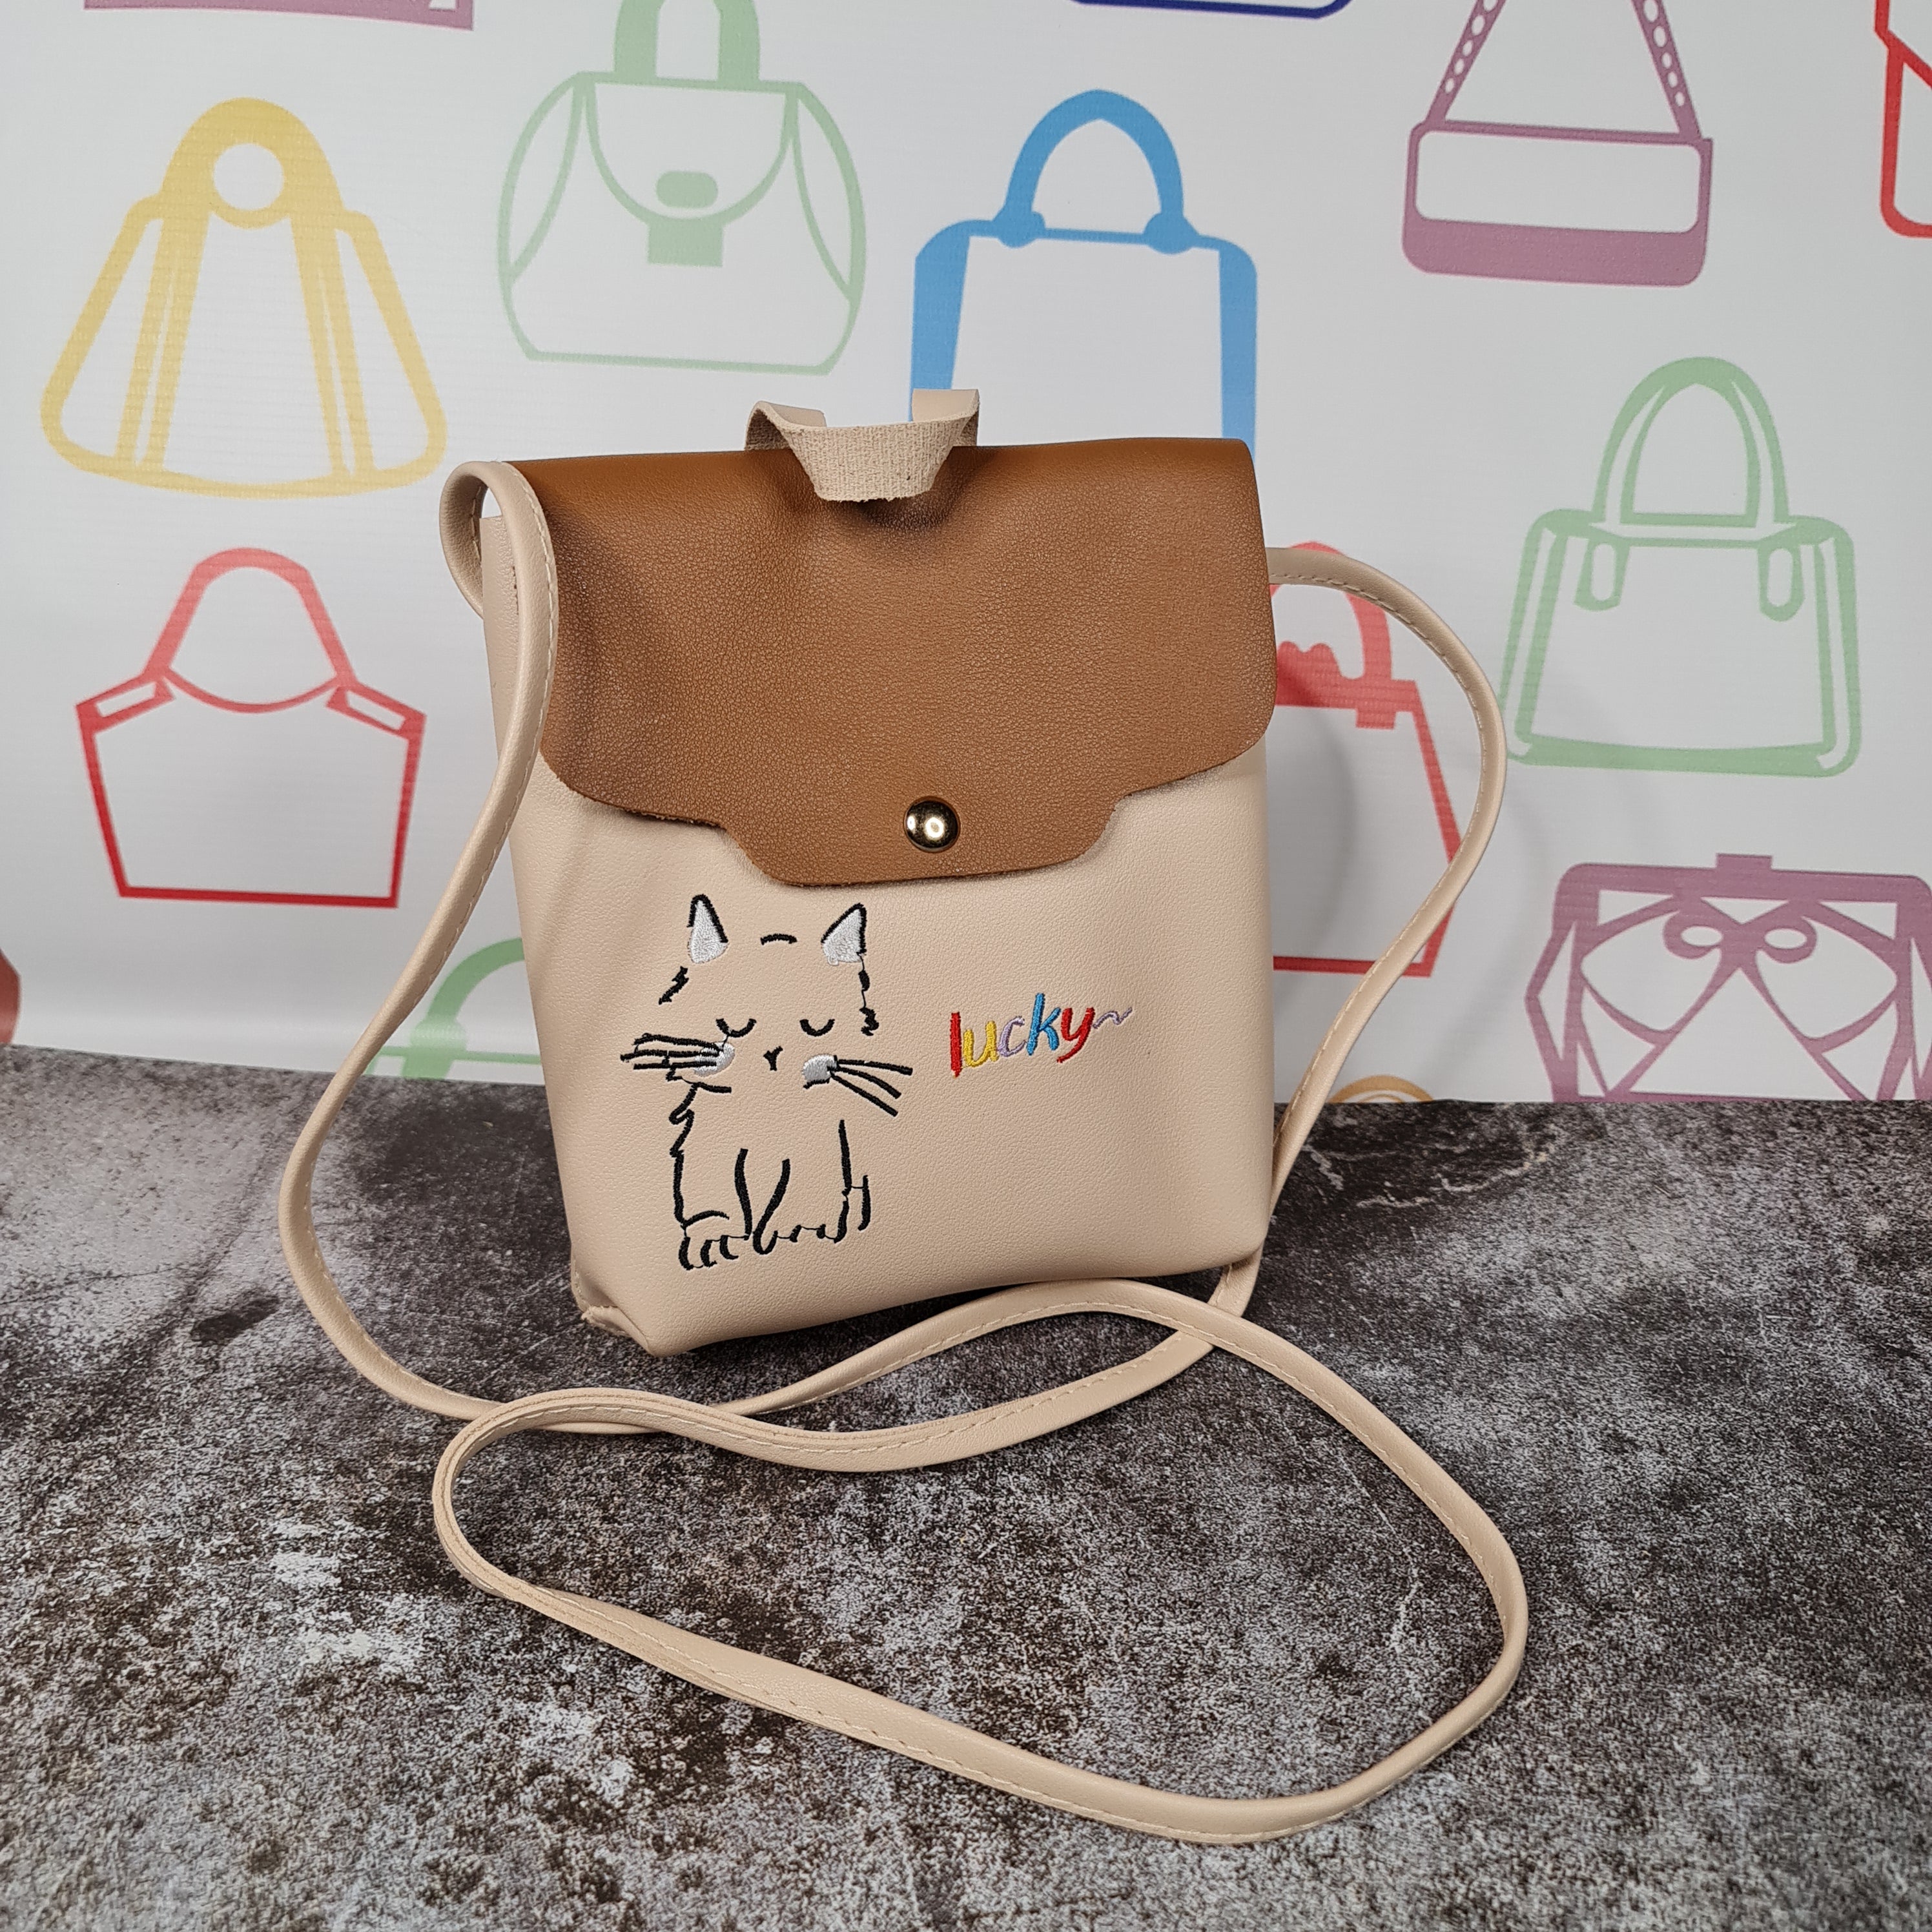 Kids Hand bag - Maha fashions -  bagpacks